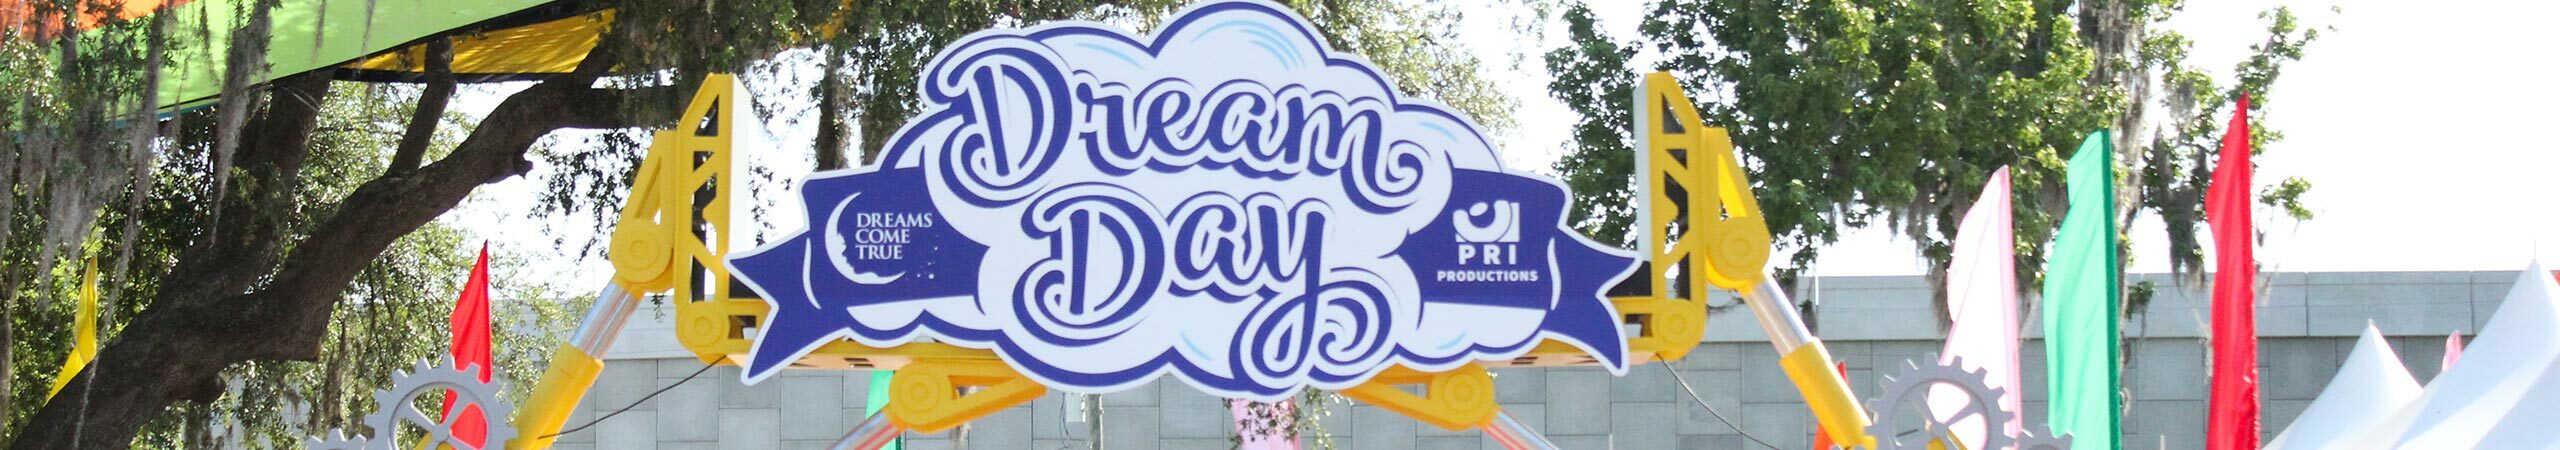 Dream Day 2016: Parade